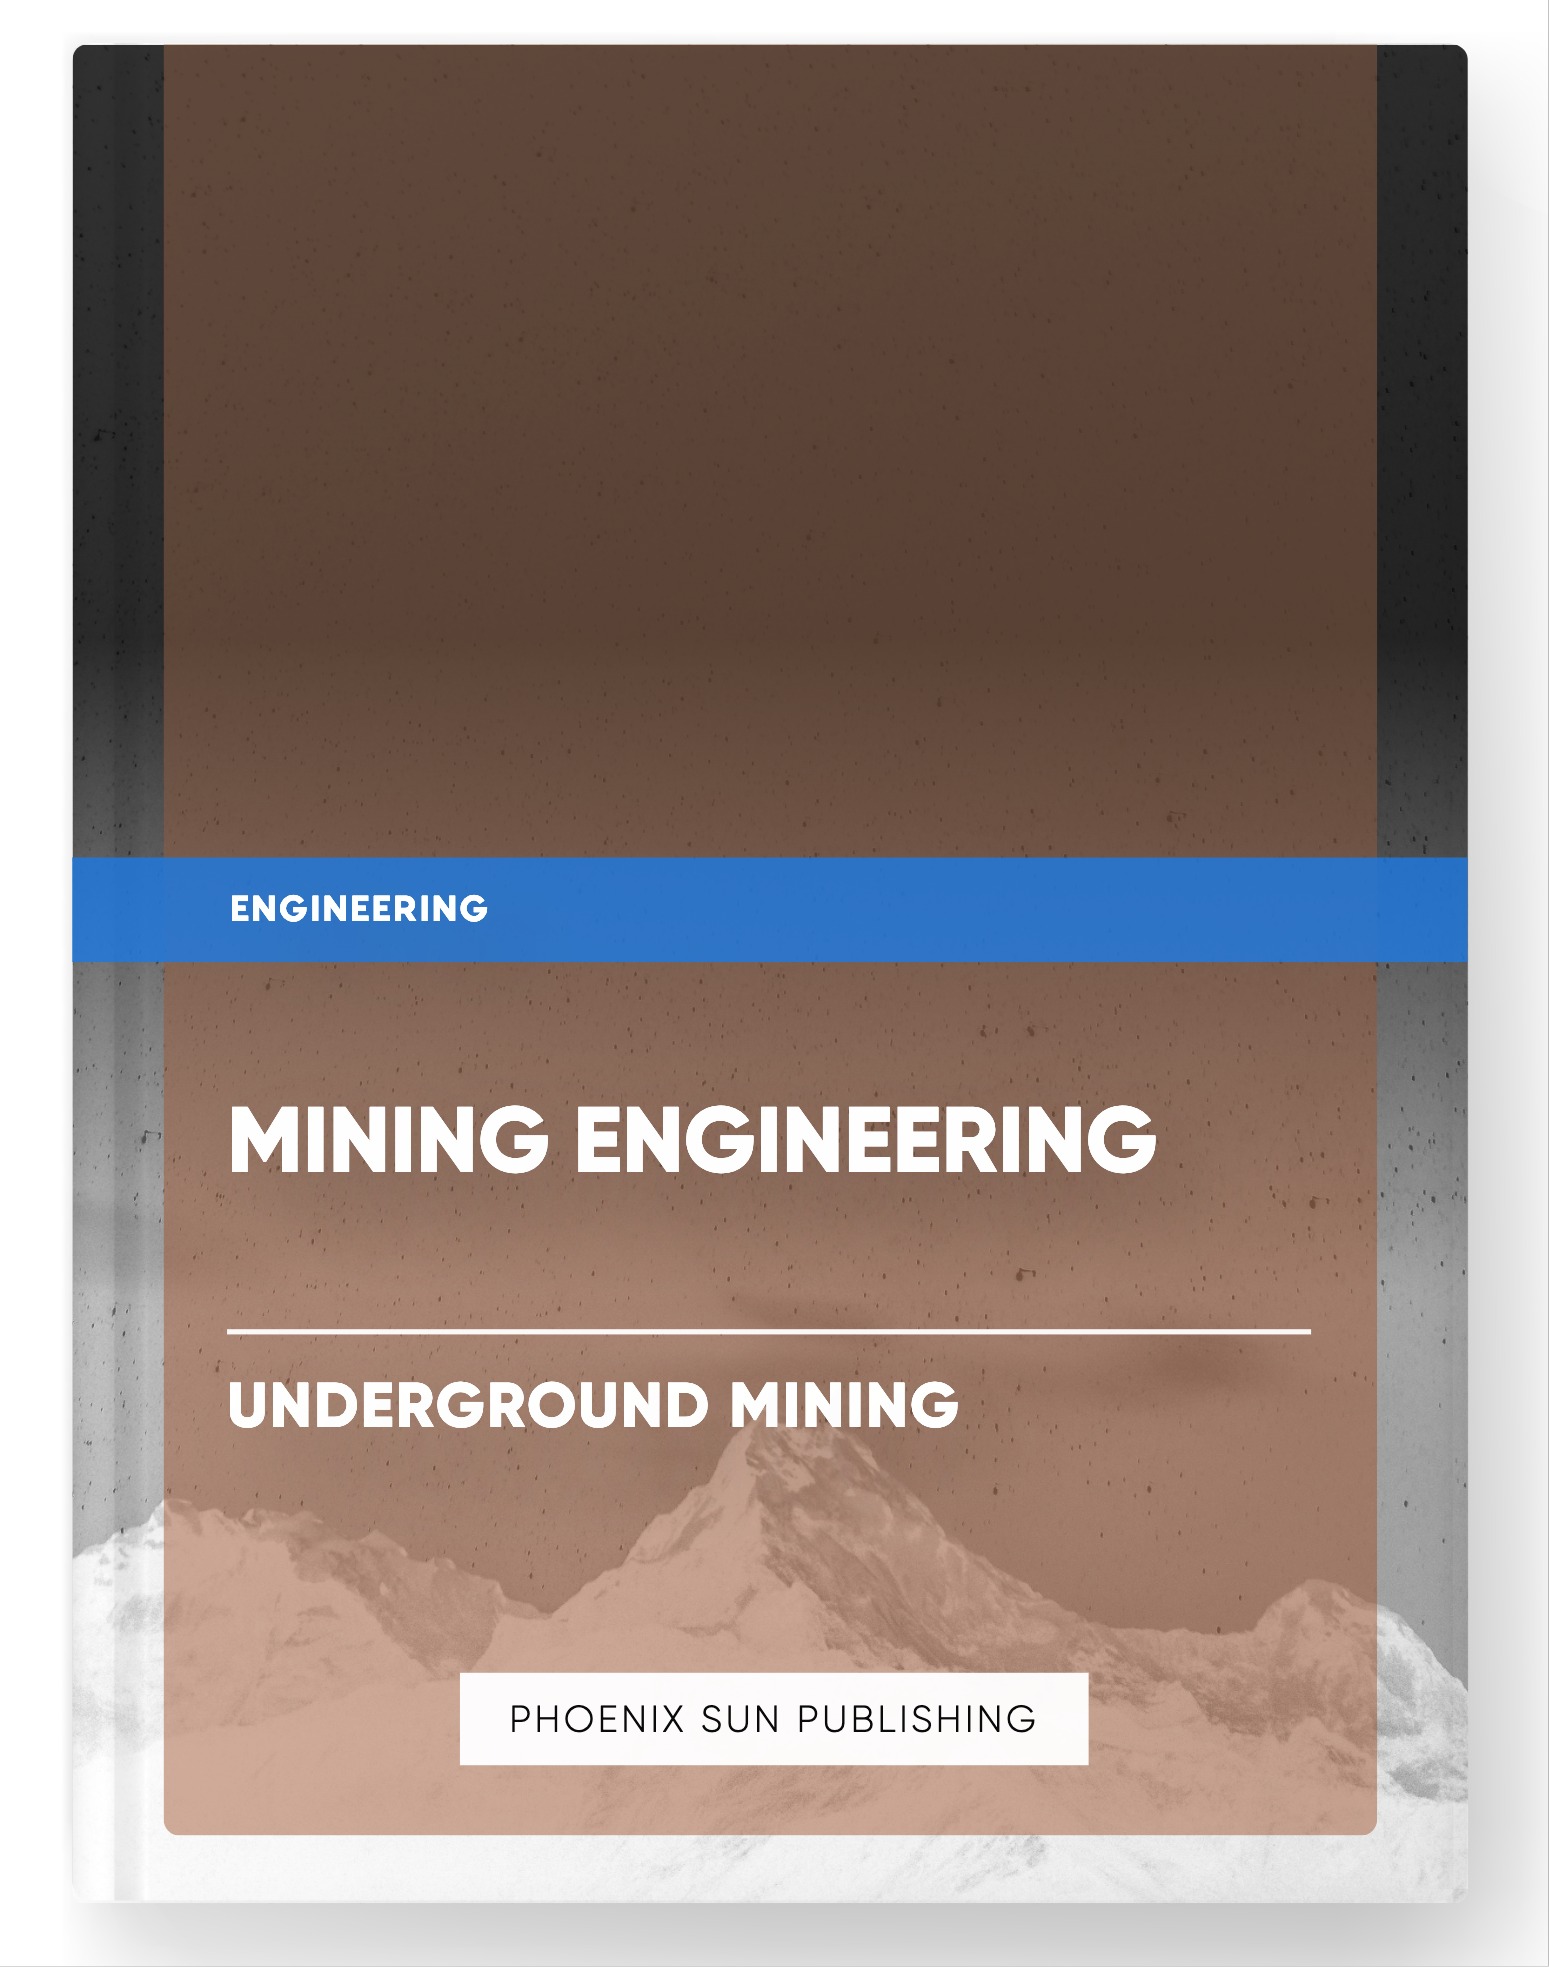 Mining Engineering – Underground Mining